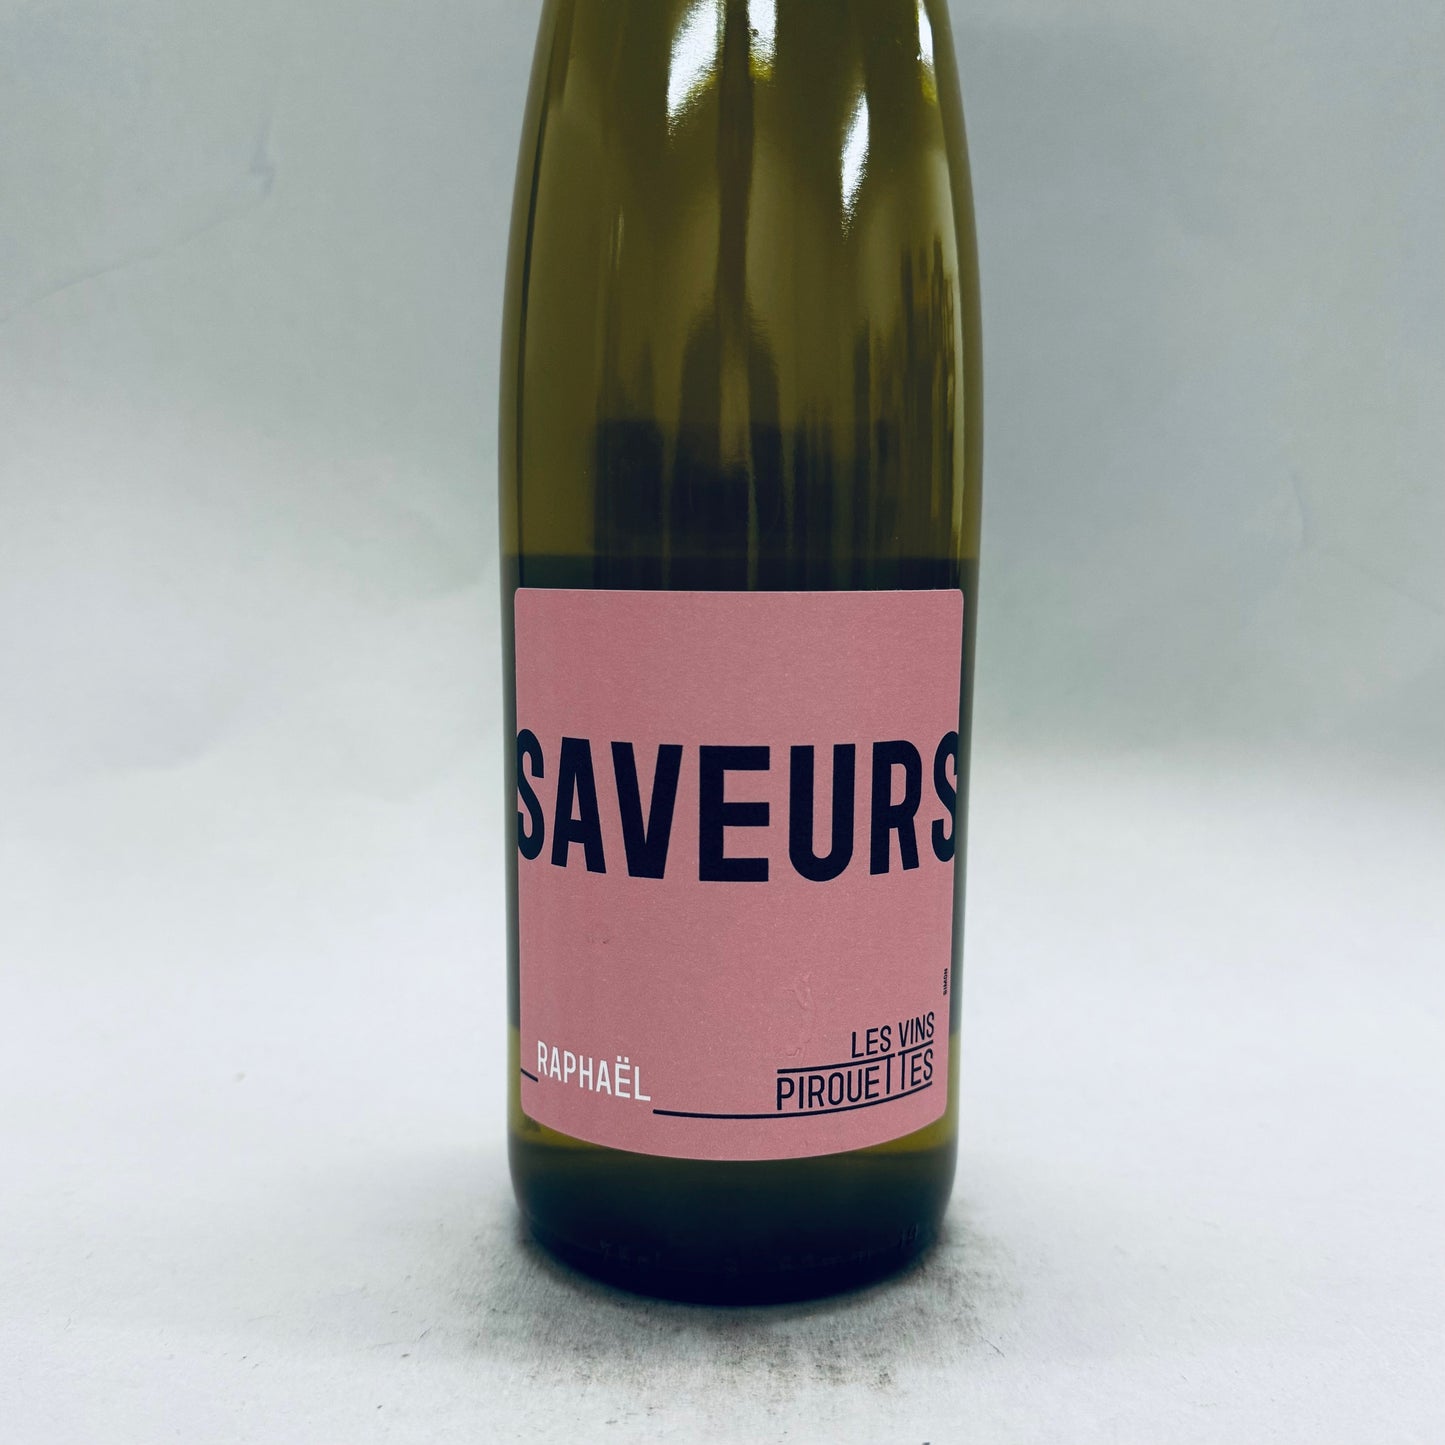 2019 Les Vins Pirouettes Saveurs de Raphael